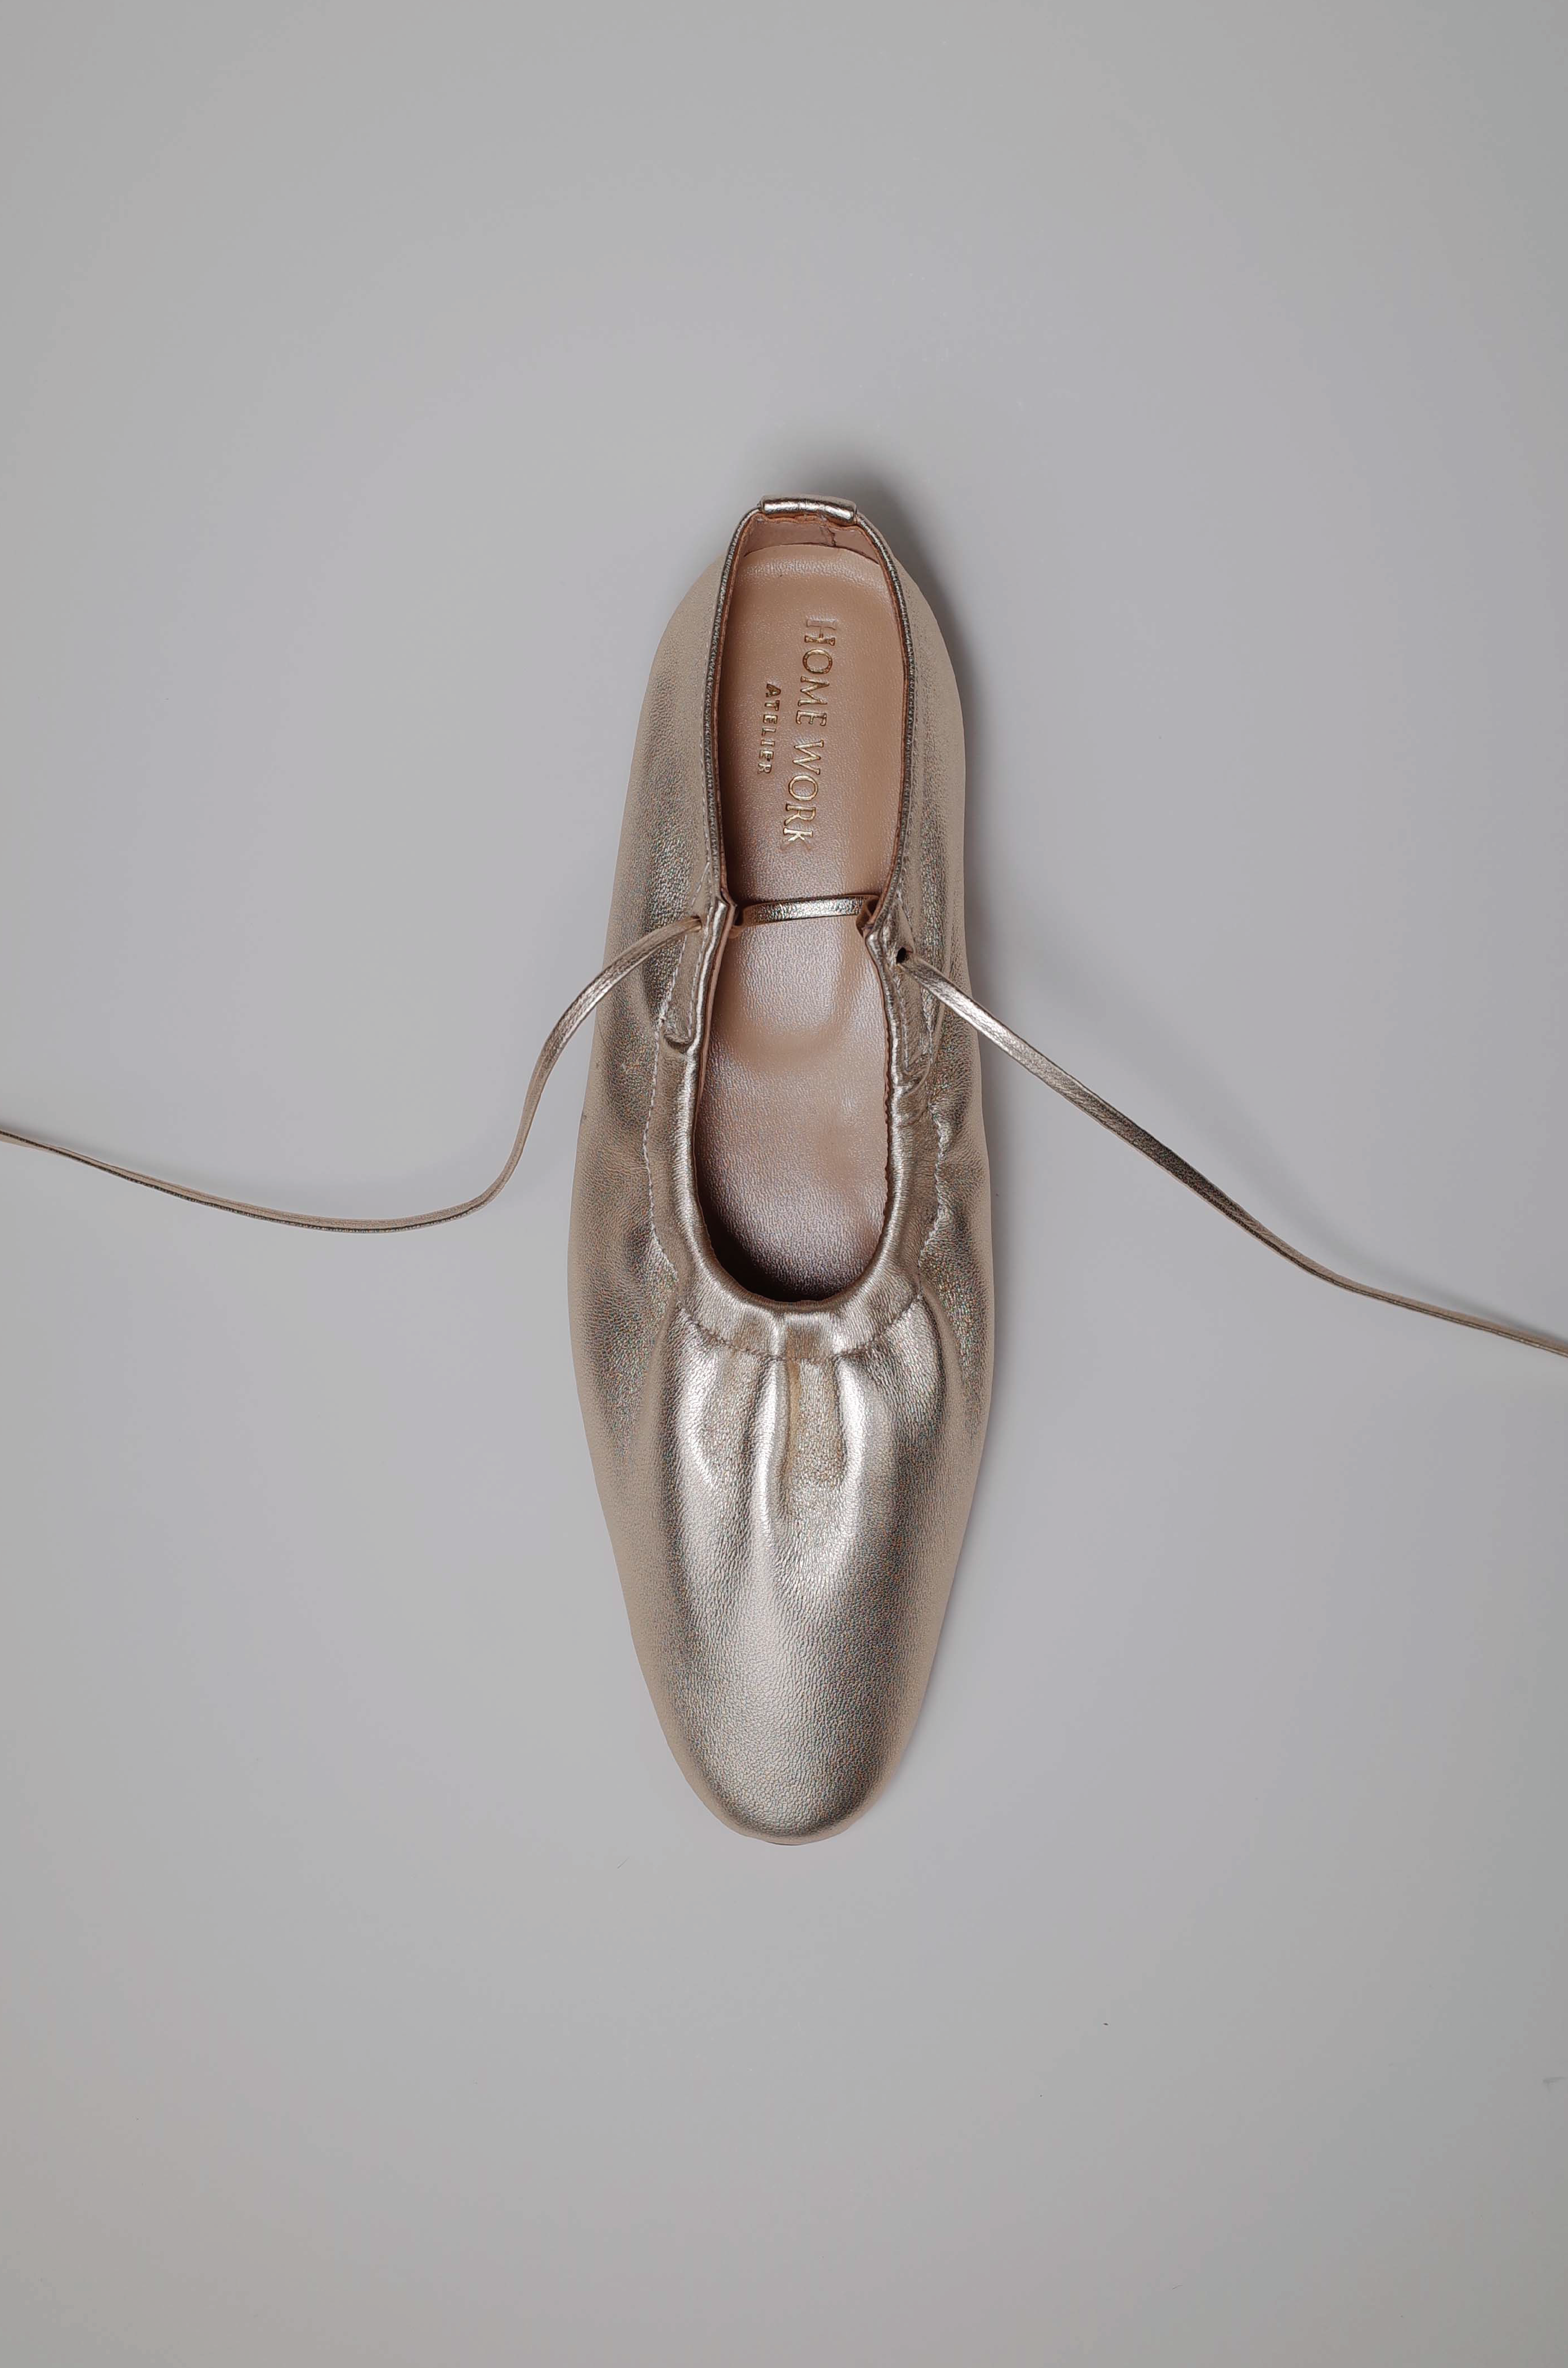 Craftsman Made Leather100% Ballet Shoes (Gold Leaf)